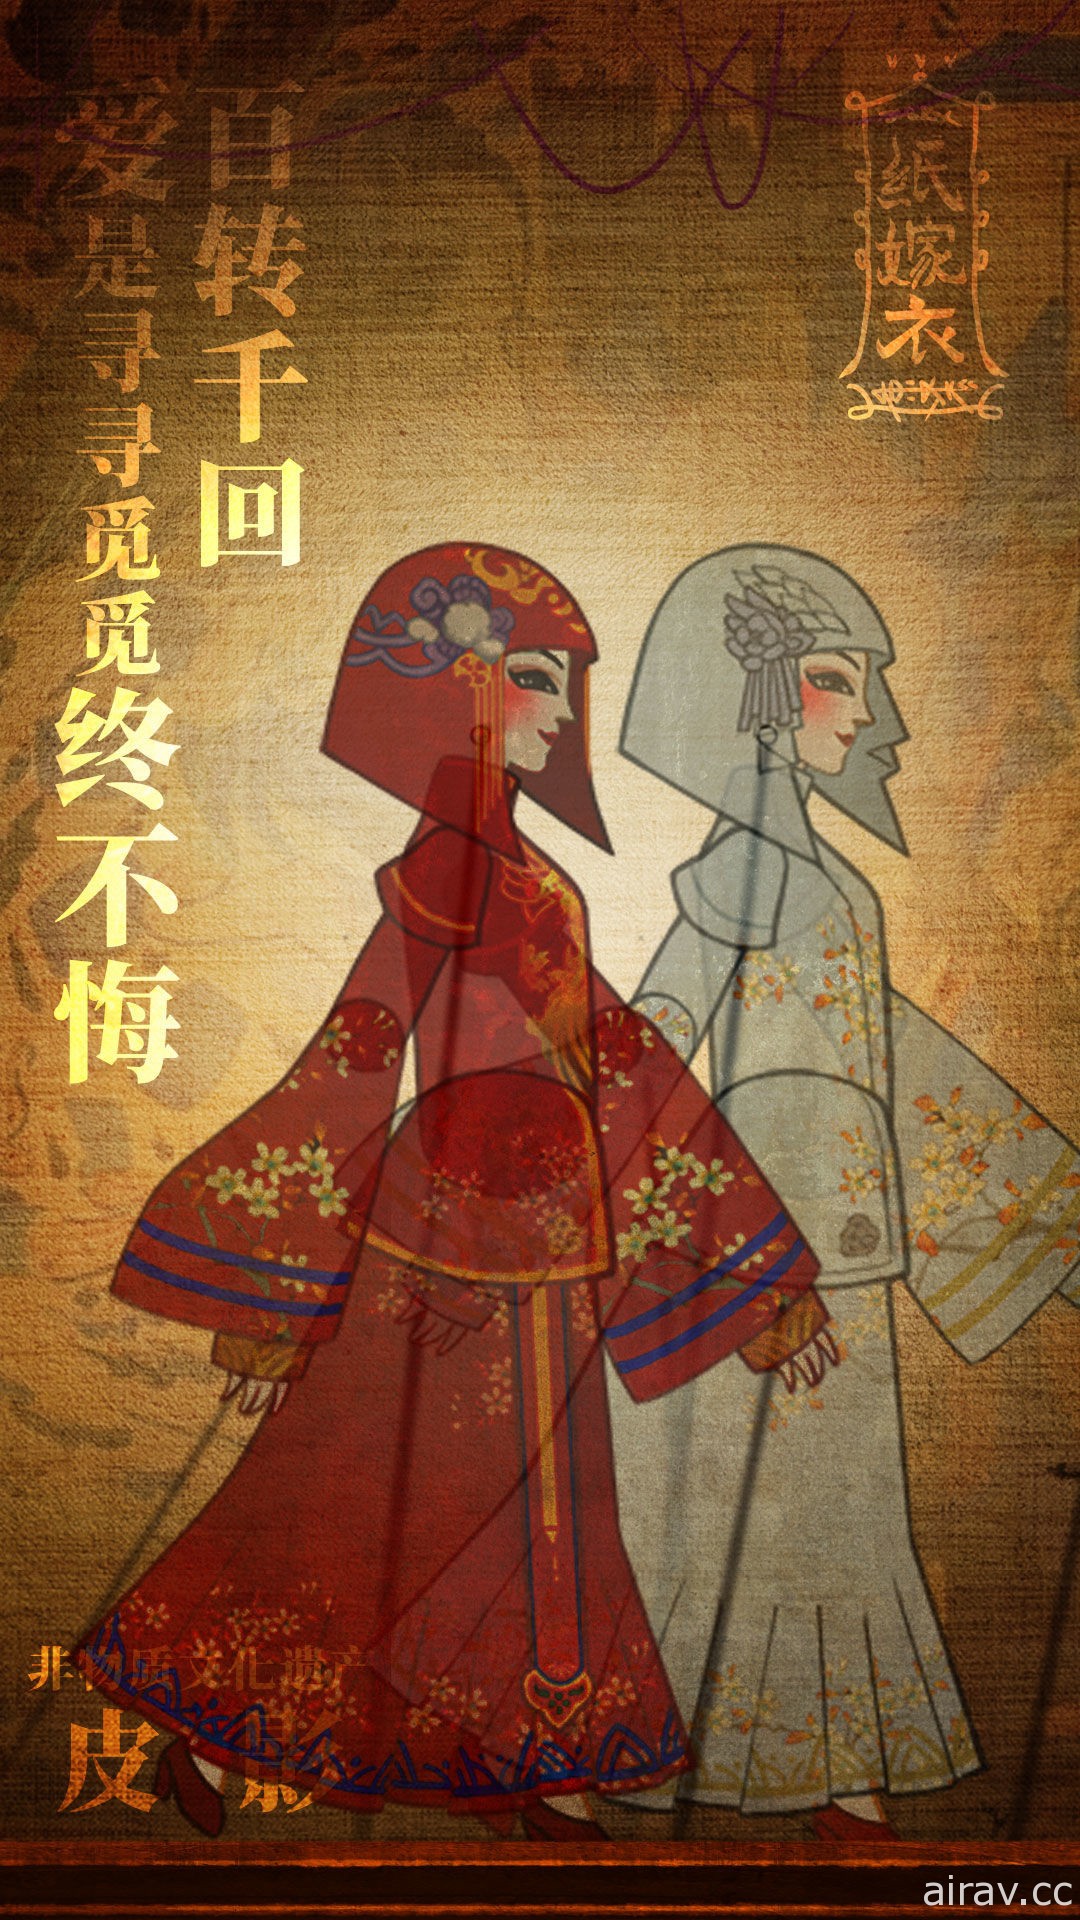 中式悬疑剧情解谜游戏《纸嫁衣》系列最新作《纸嫁衣 3》宣布将于 2022 年推出